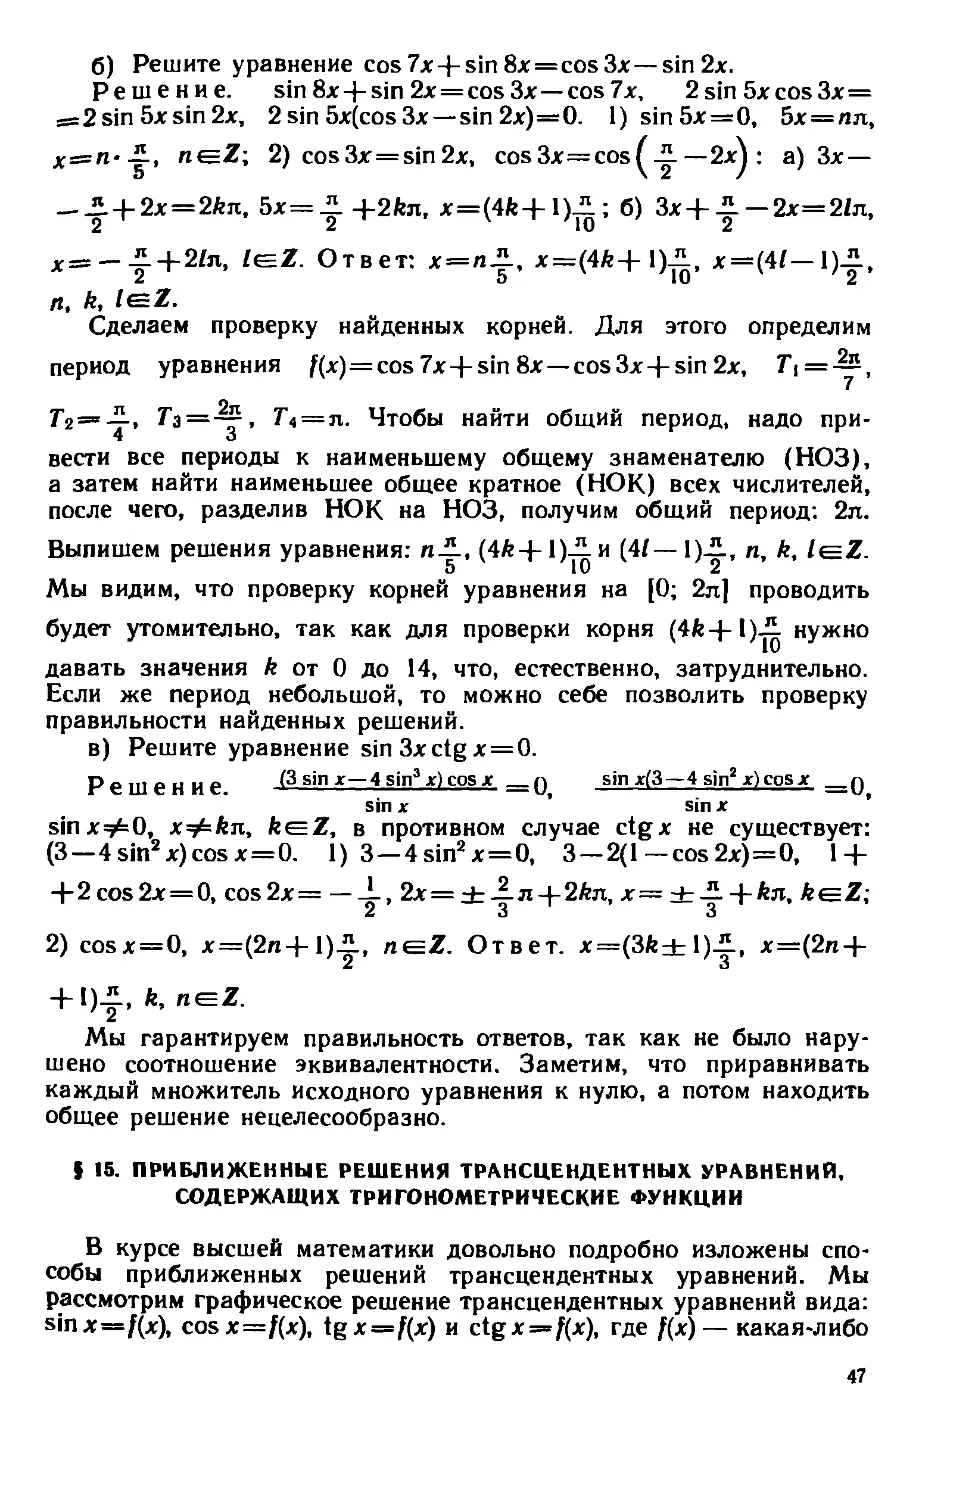 § 15. Приближенные решения трансцендентных уравнений, содержащих тригонометрические функции